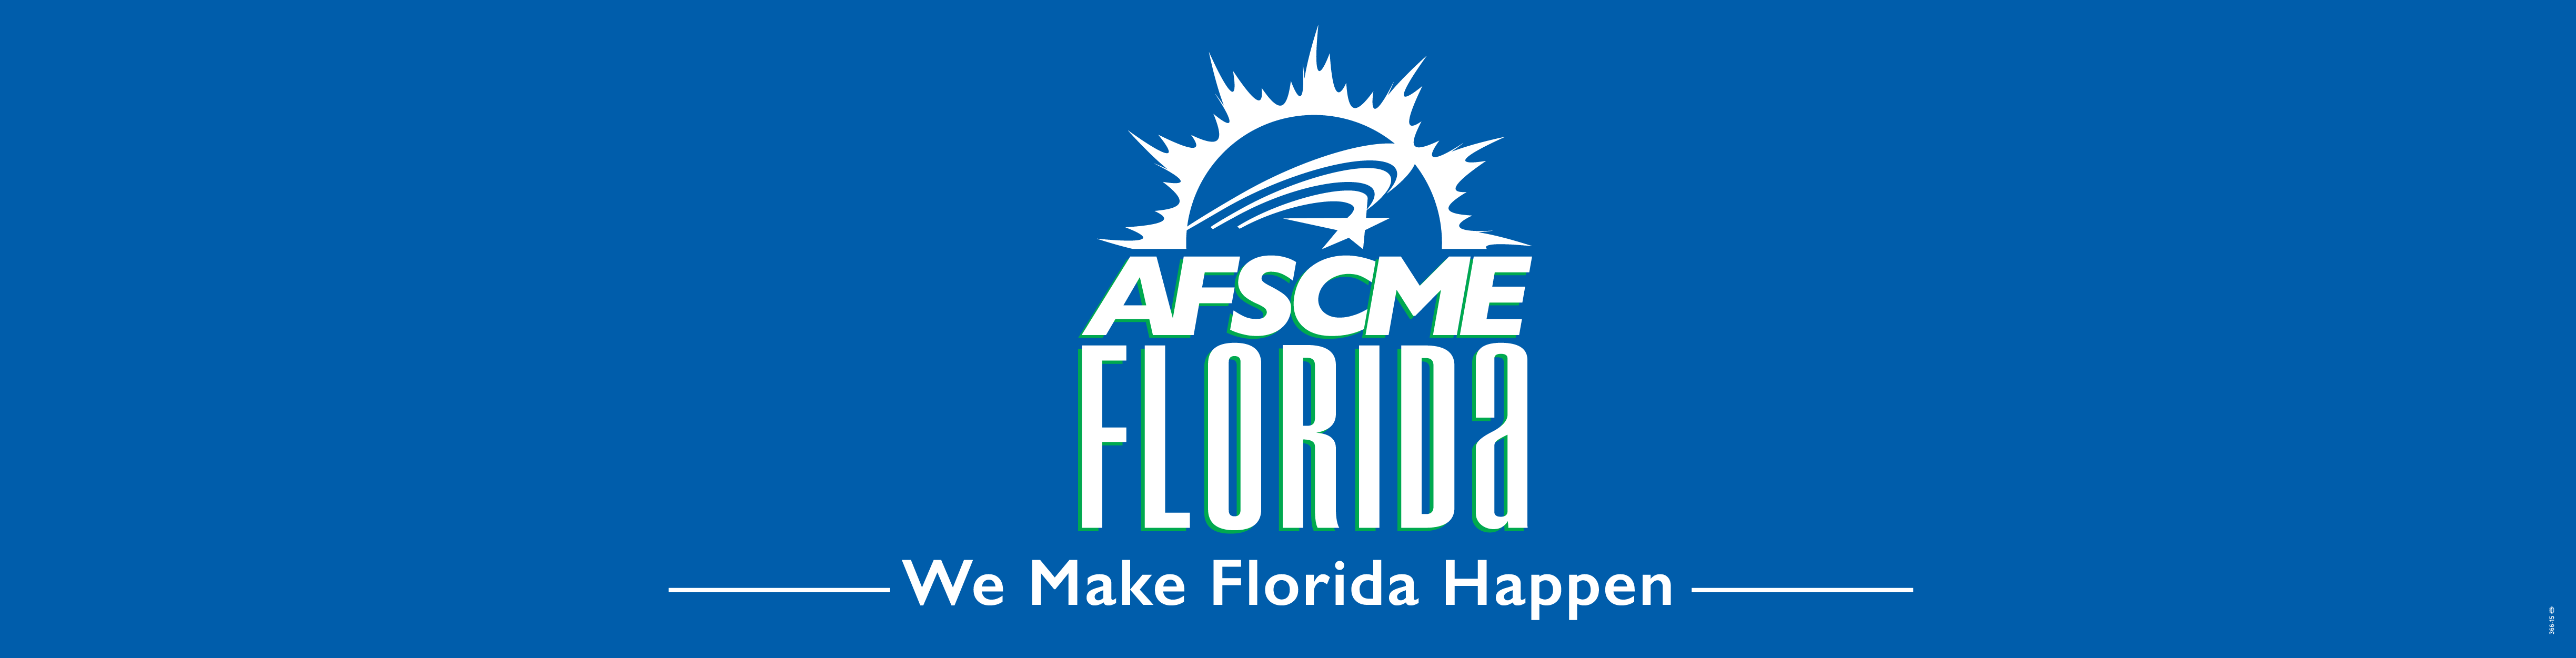 AFSCME Florida Web Banner